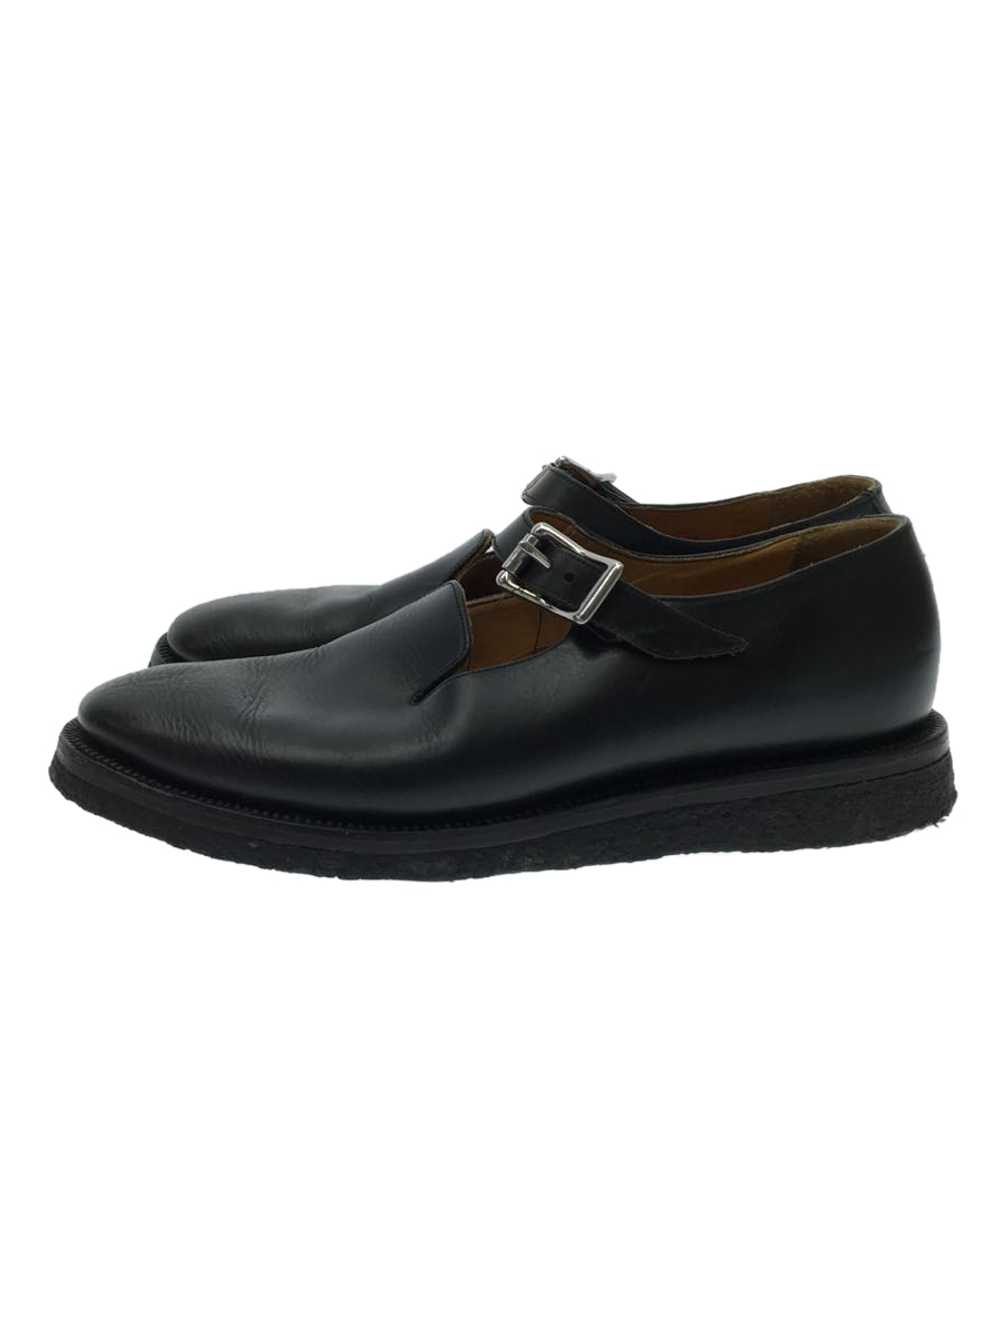 Yuketen Shoes/Us8/Black/Gka-1671-A/Wild Life Tail… - image 1